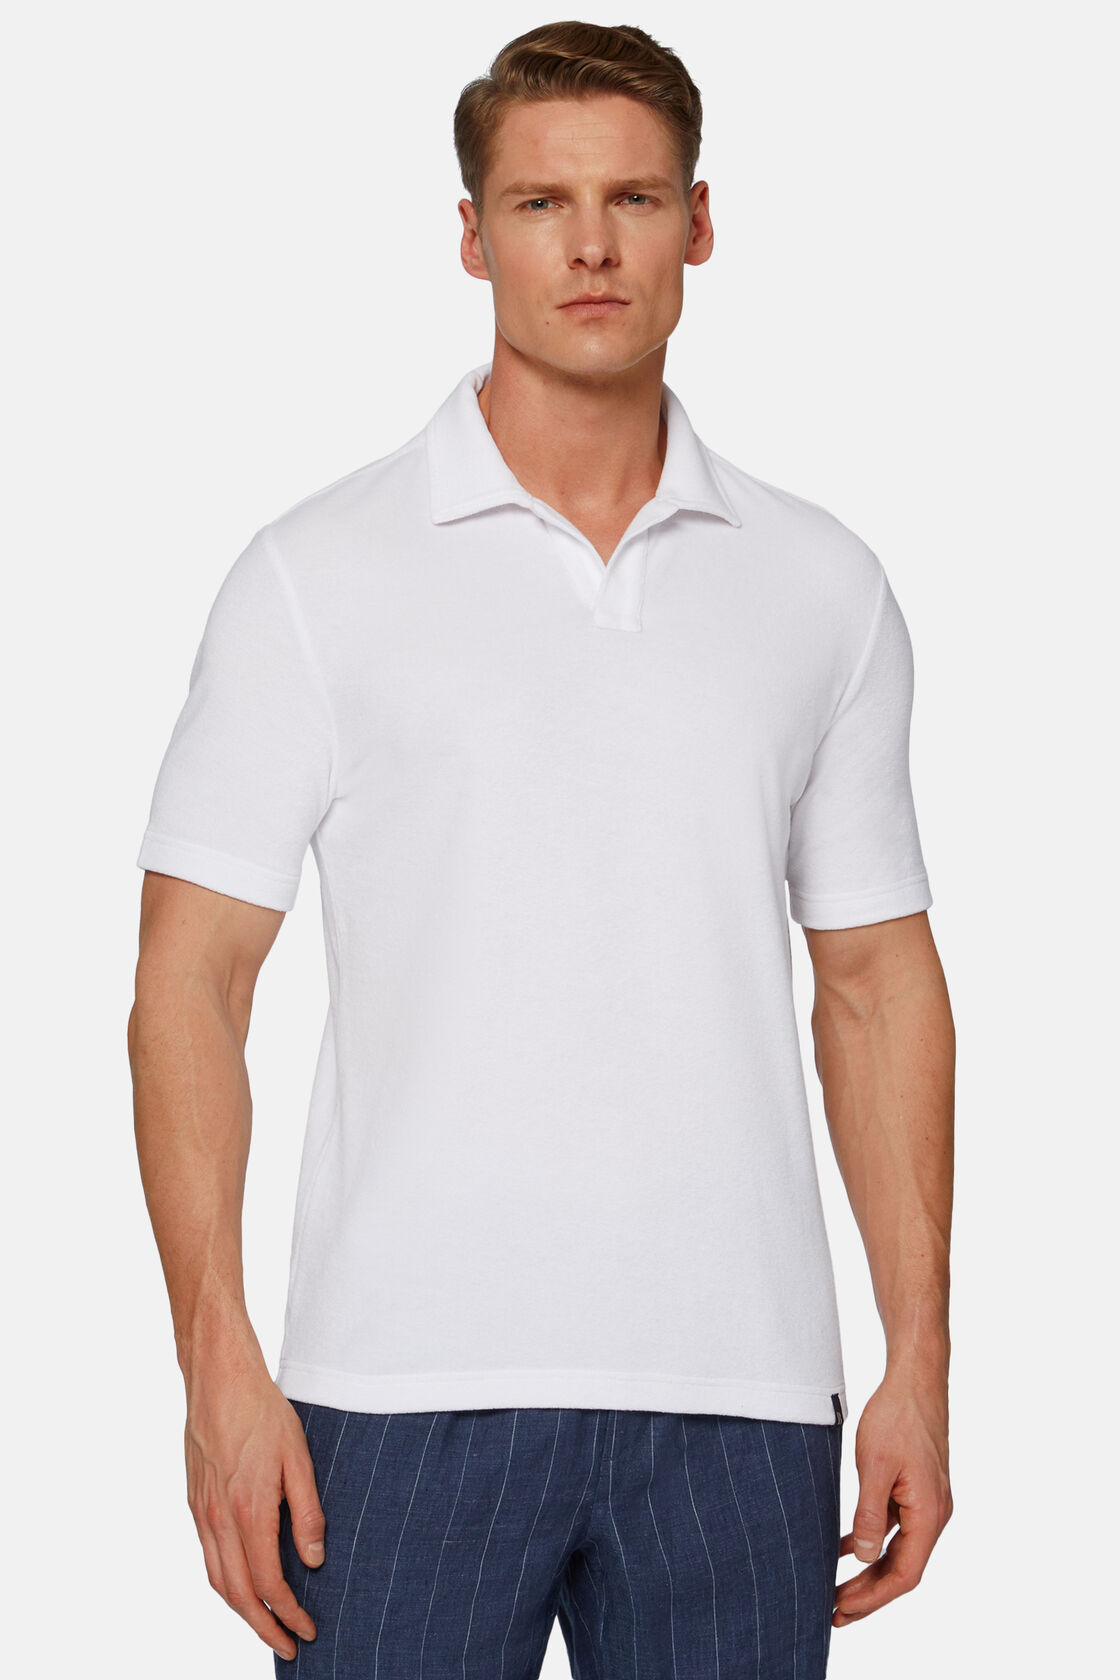 Cotton/Nylon Polo Shirt, White, hi-res